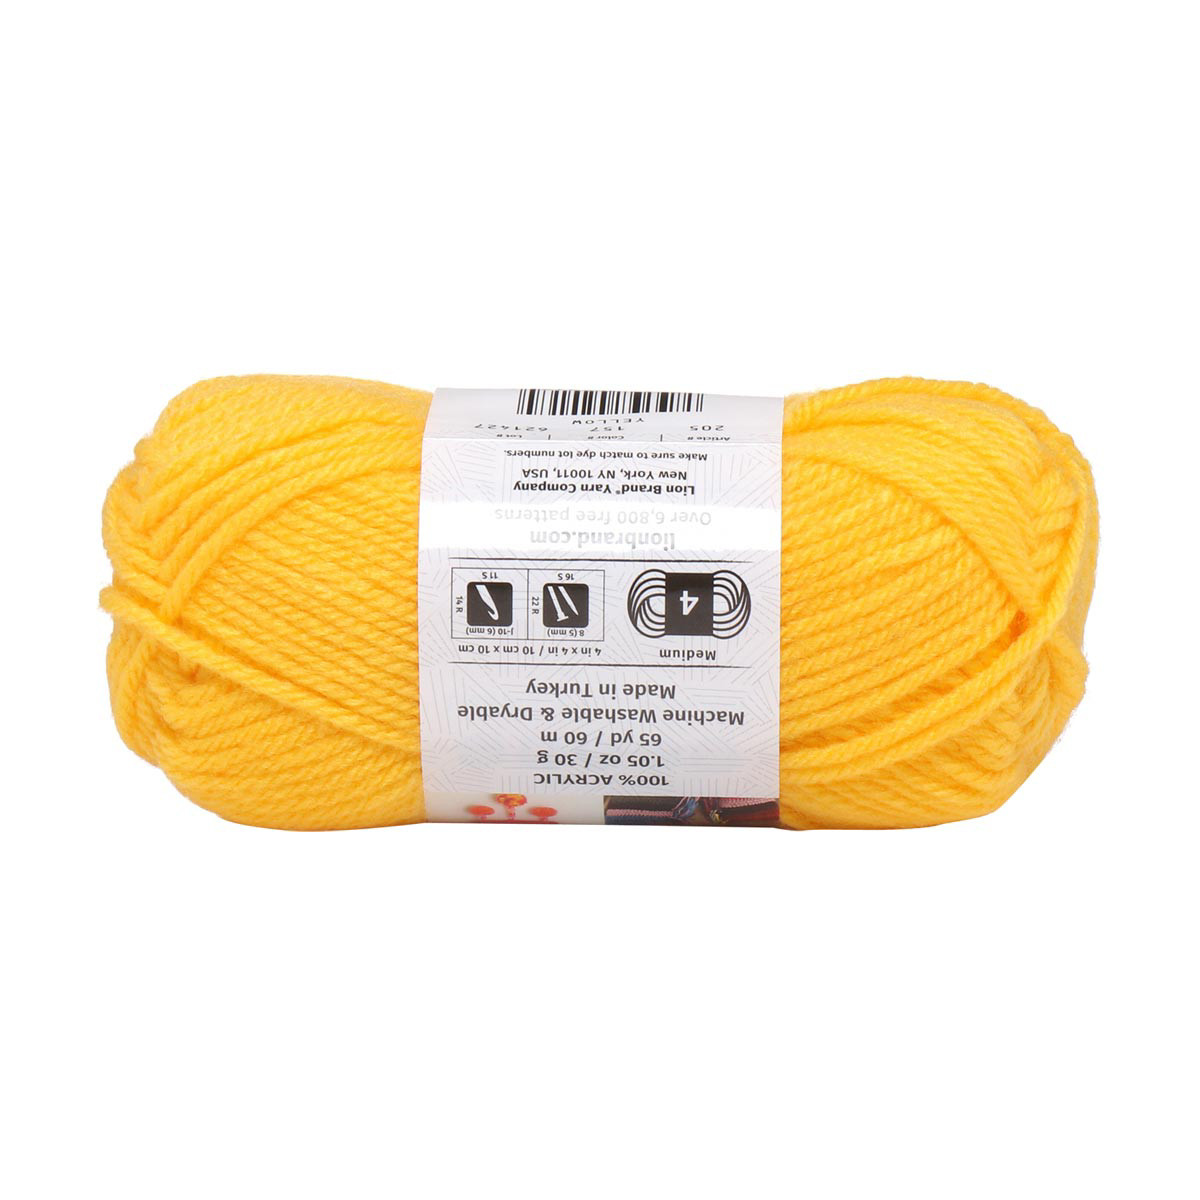 Lion Brand Yarn- DIYarn Yellow 205-157F